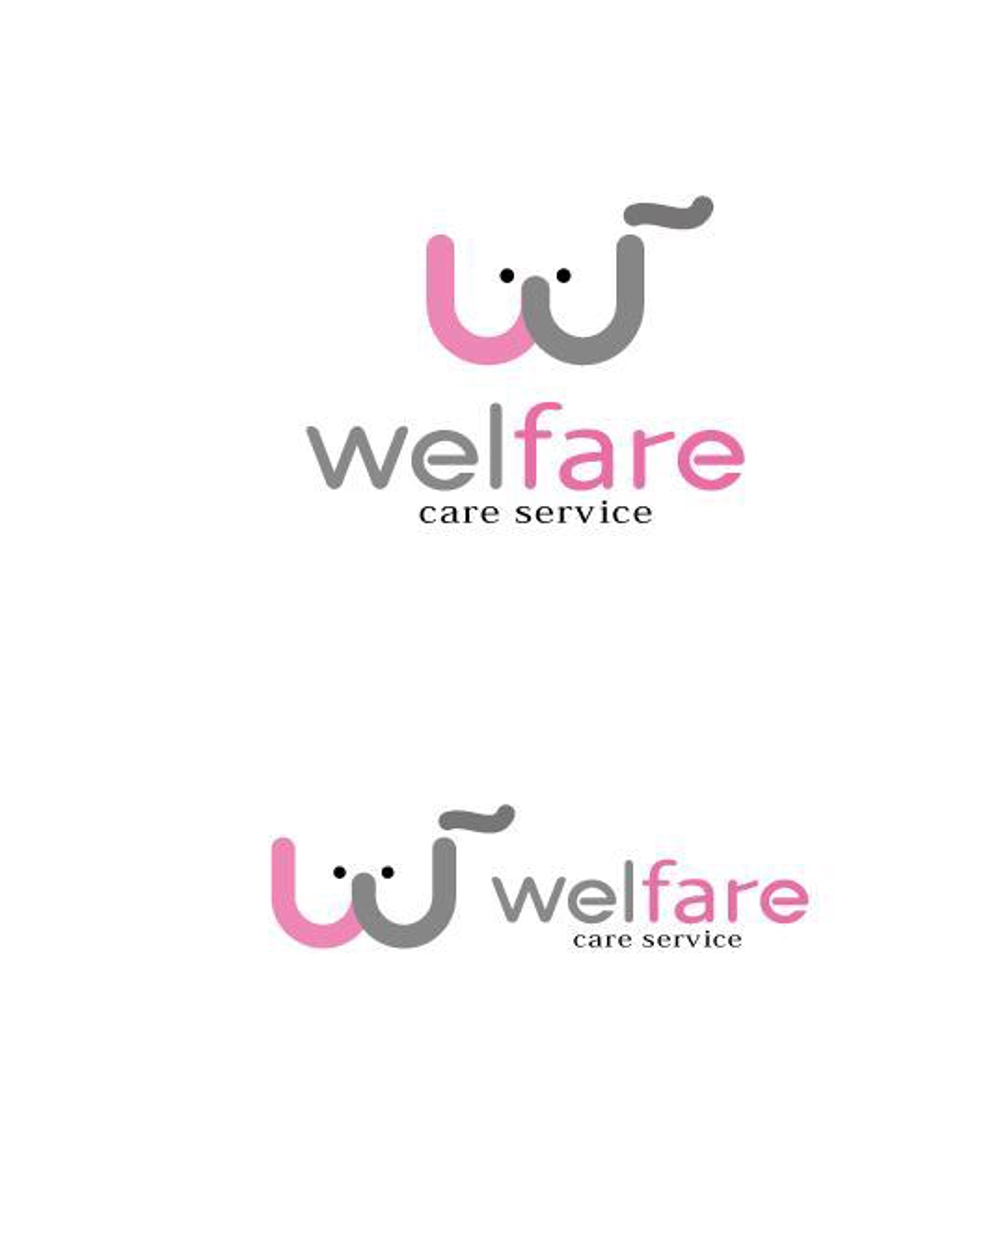 welfare01.jpg